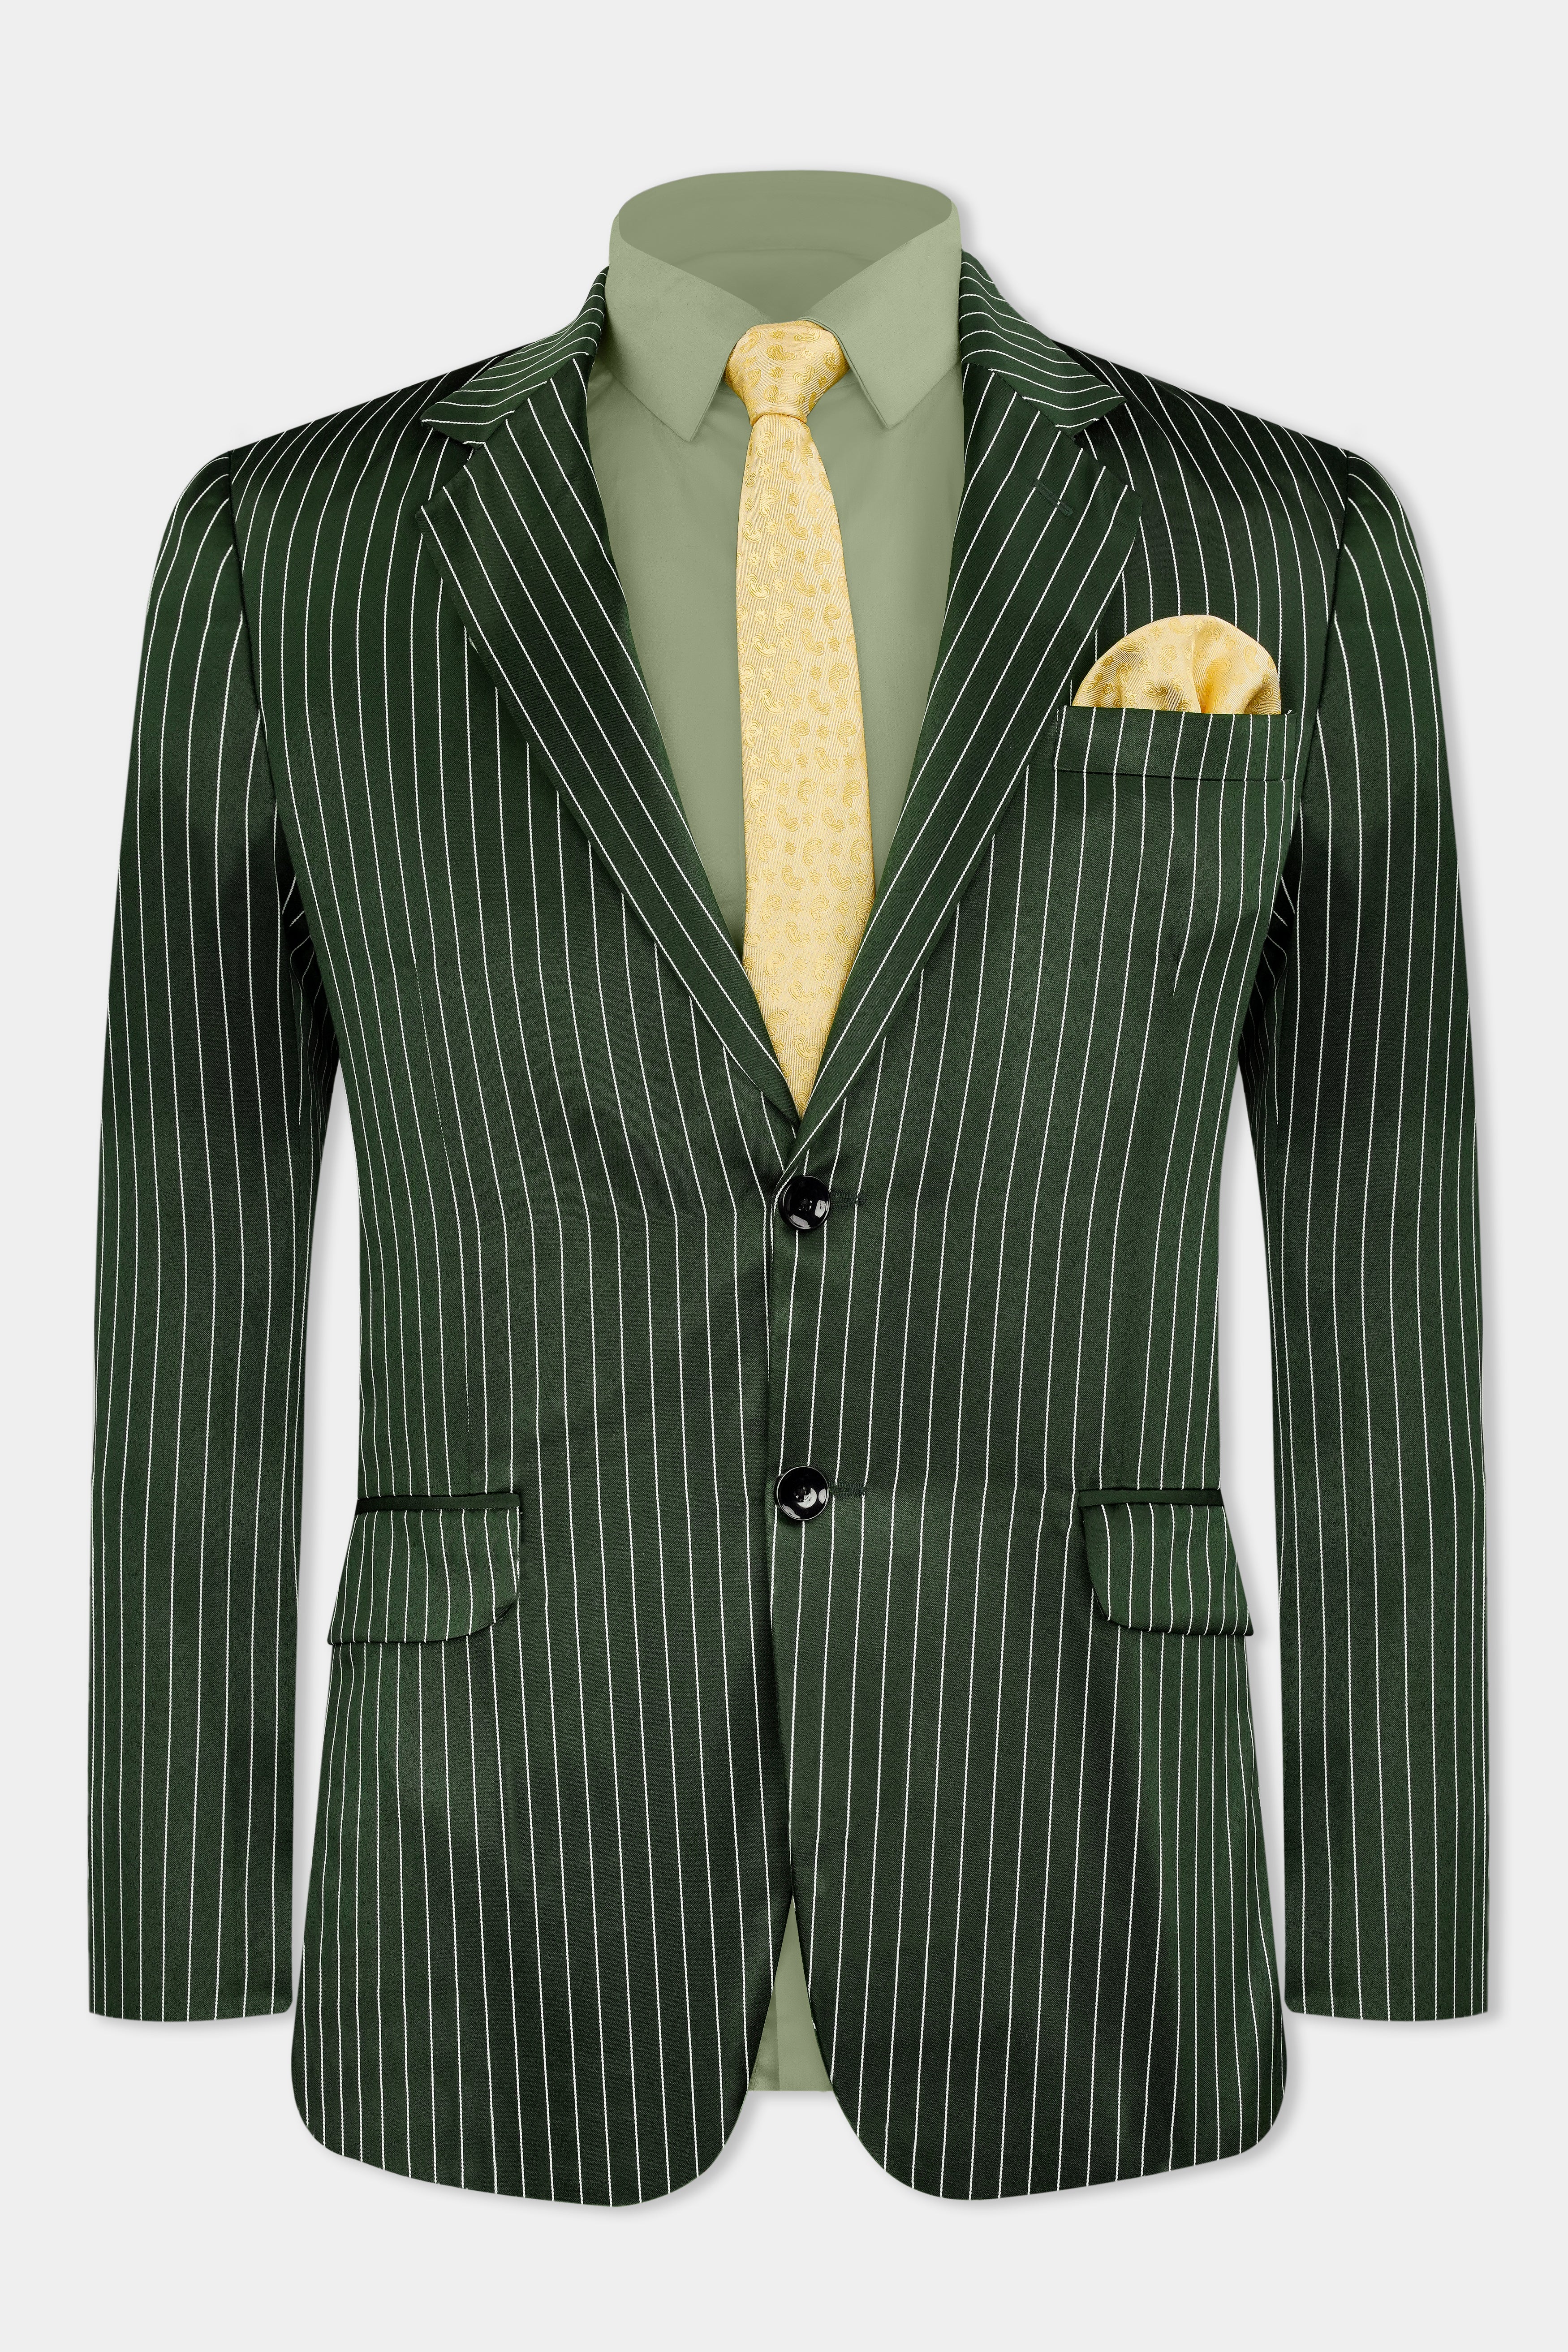 Myrtle Green and White Striped Wool Rich Blazer